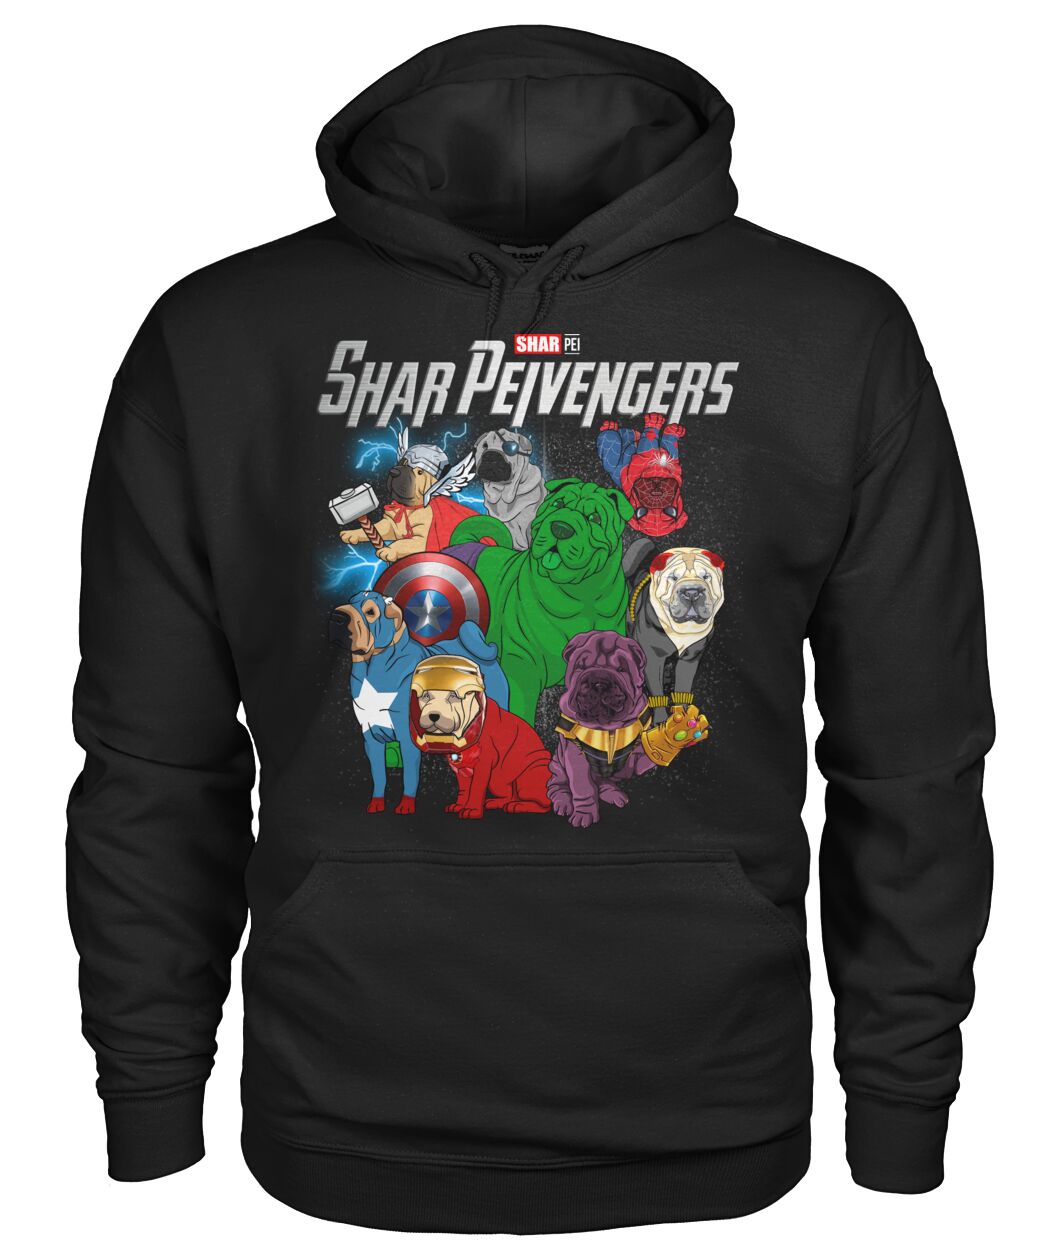 Shar Peivengers 3D Hoodie, Shirt 8